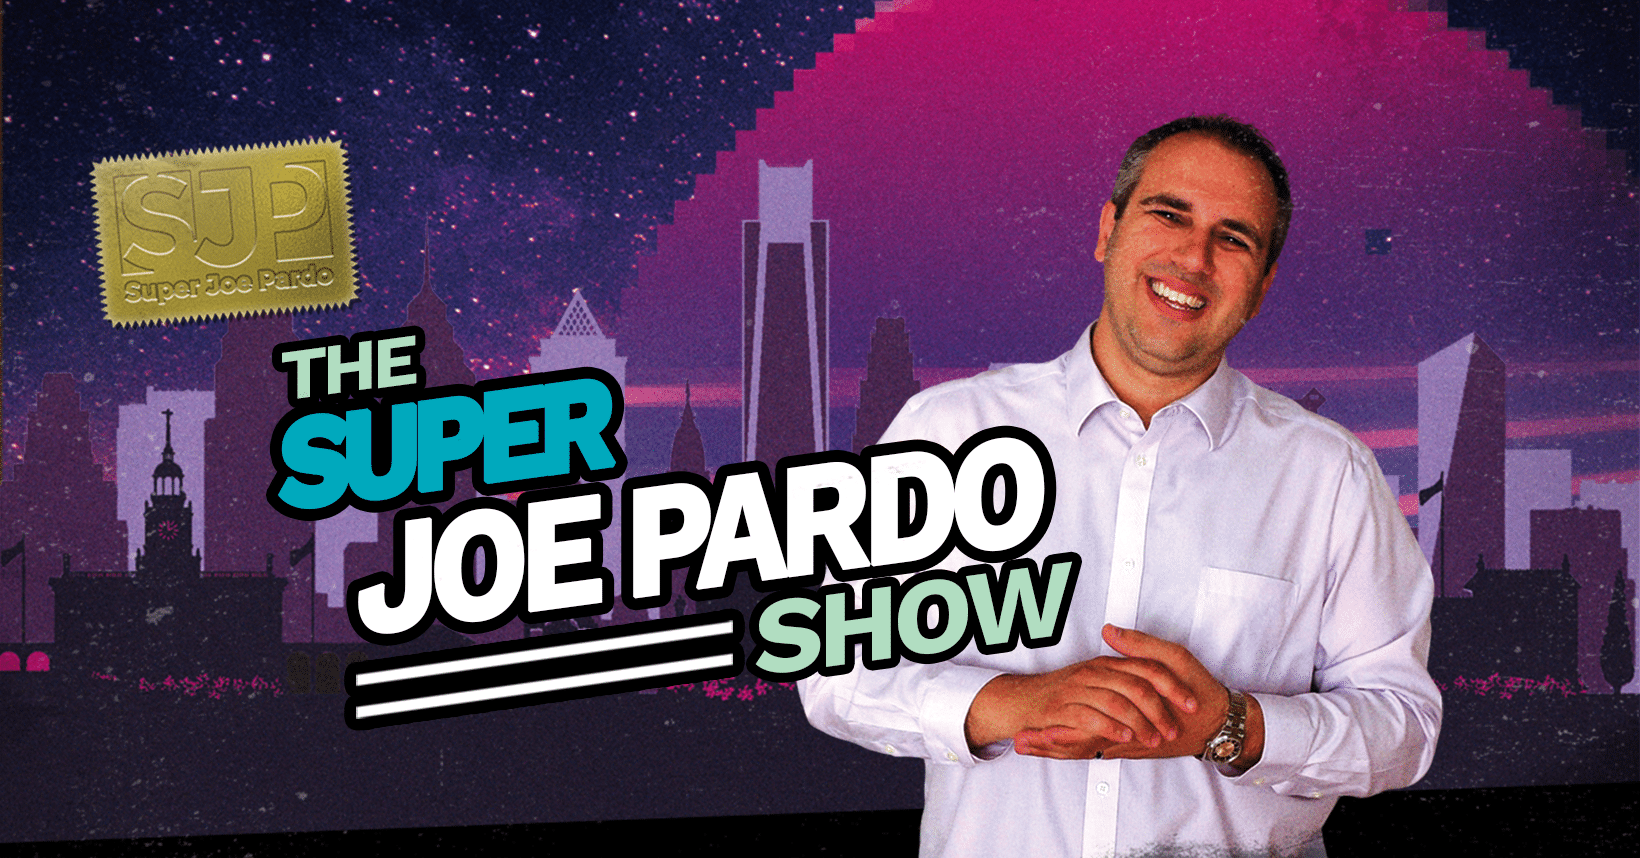 The super Joe Pardo Show